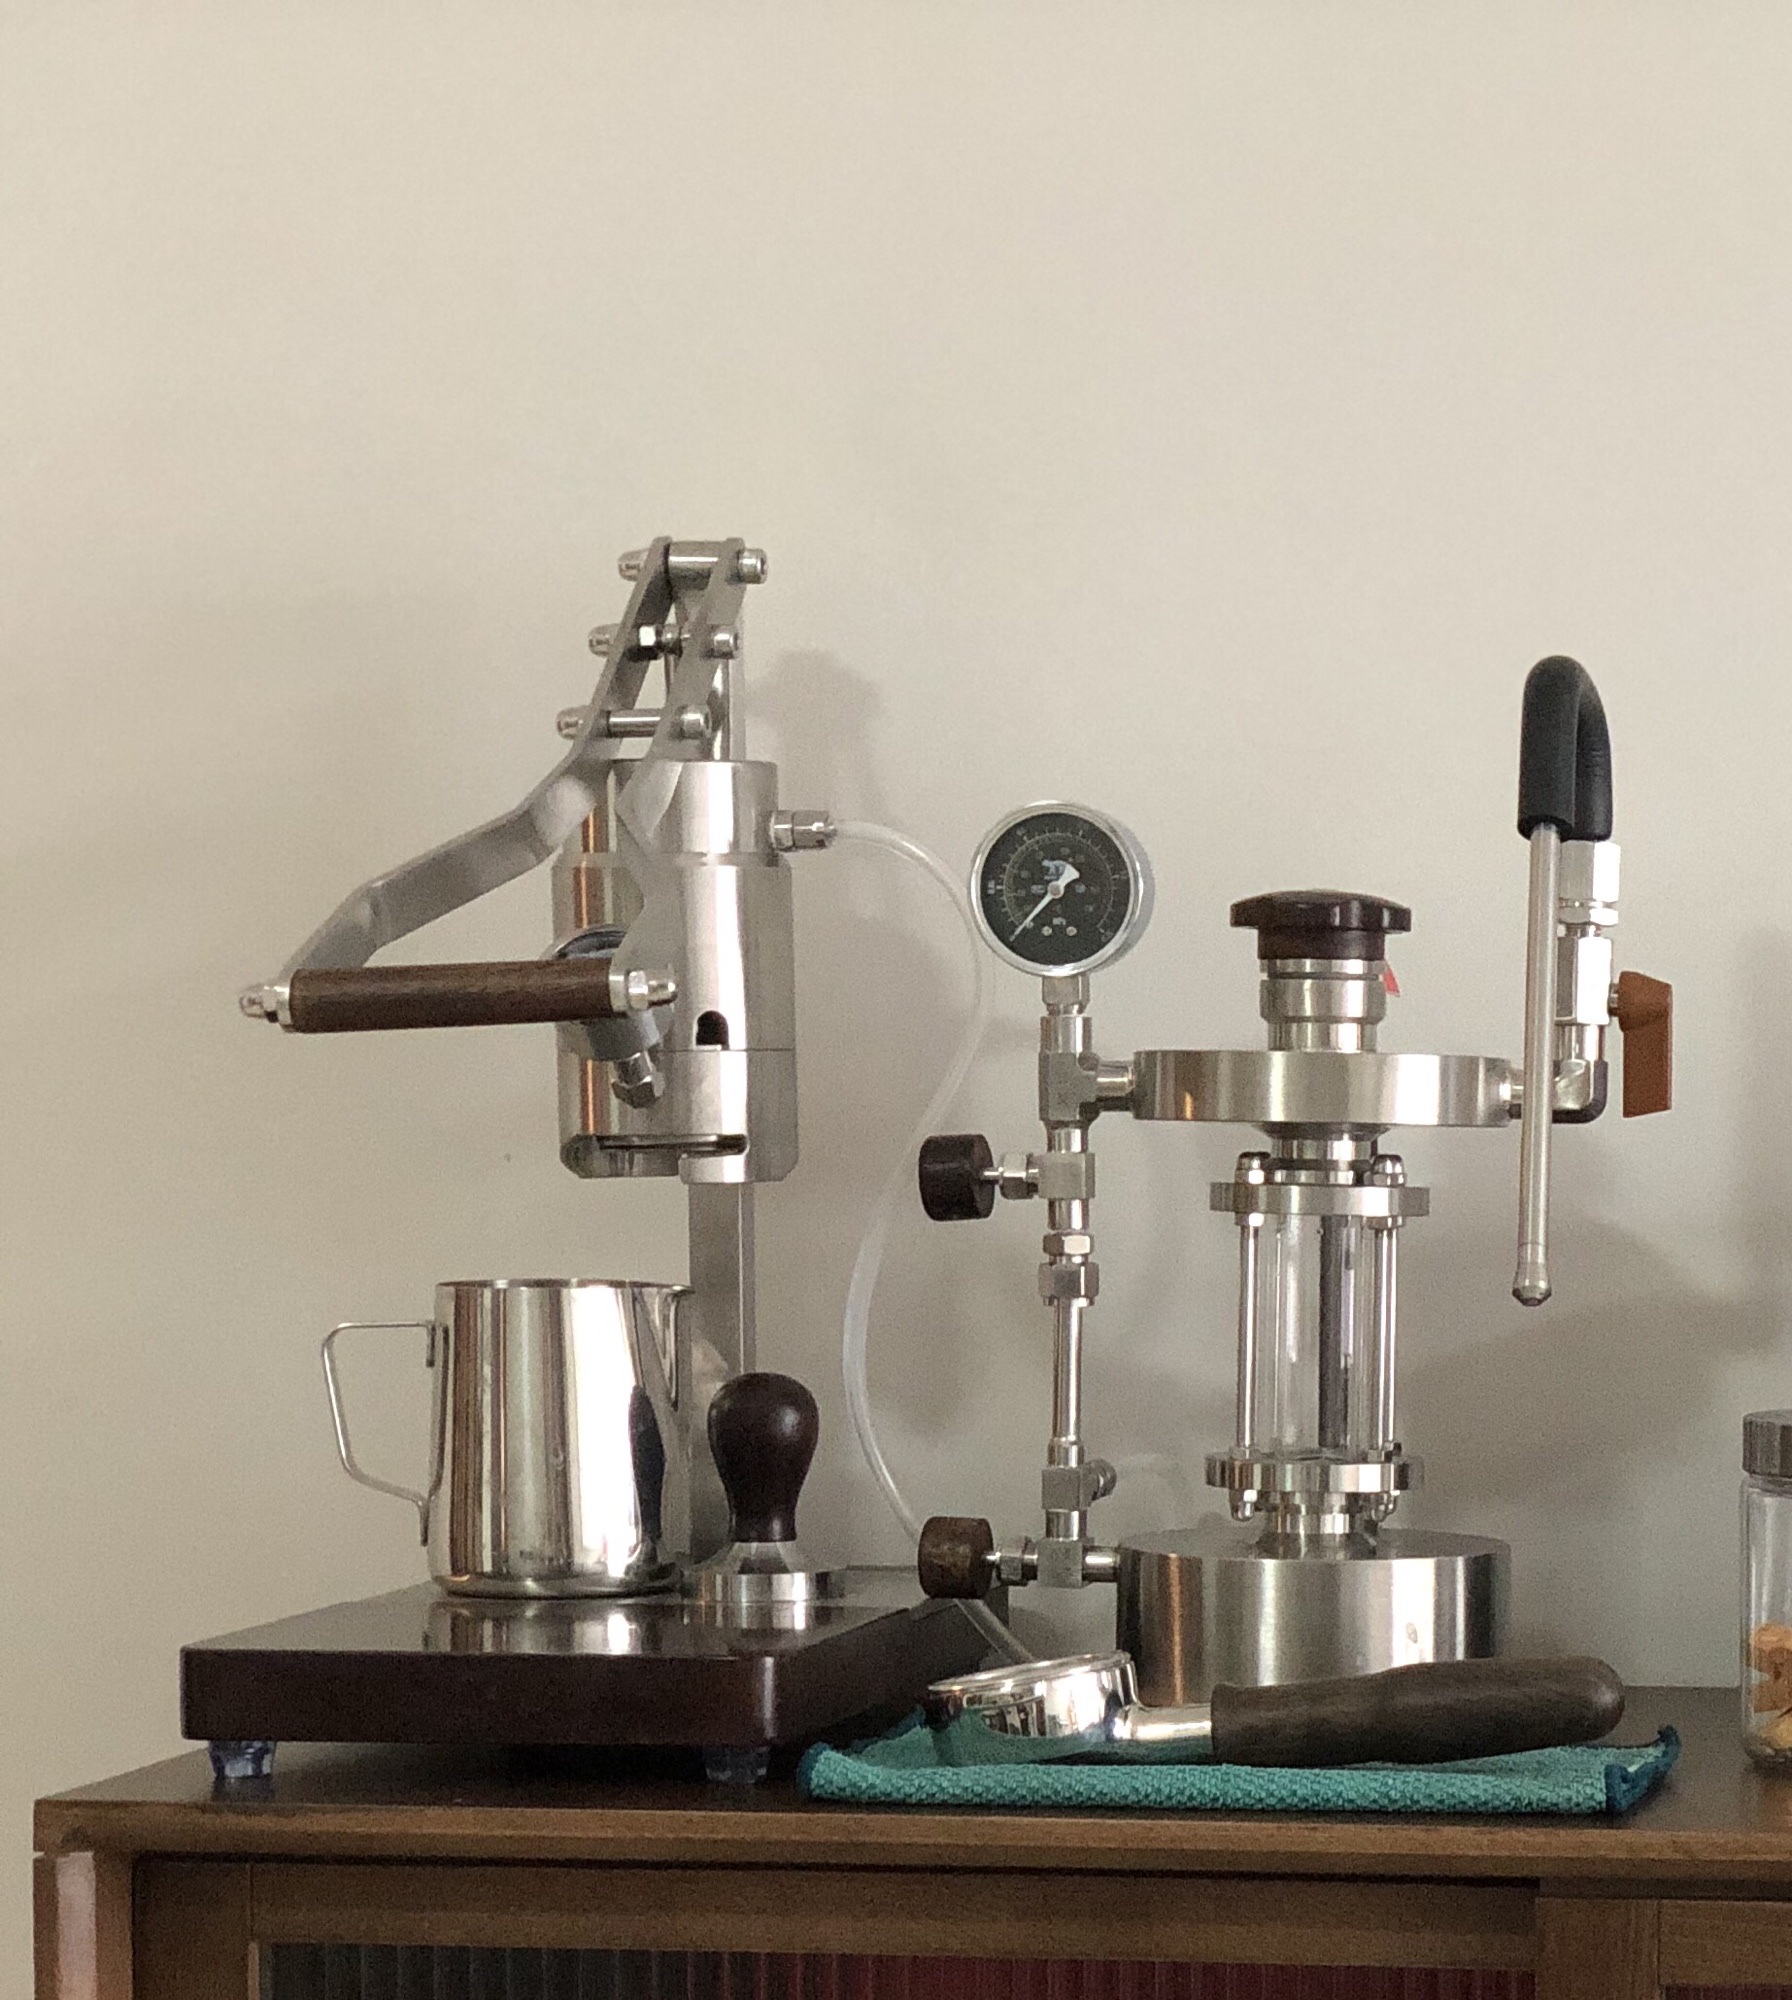 阿莱蔓Zxs-Espresso-2拉杆式咖啡机半自动意式压杆便携商家用手动